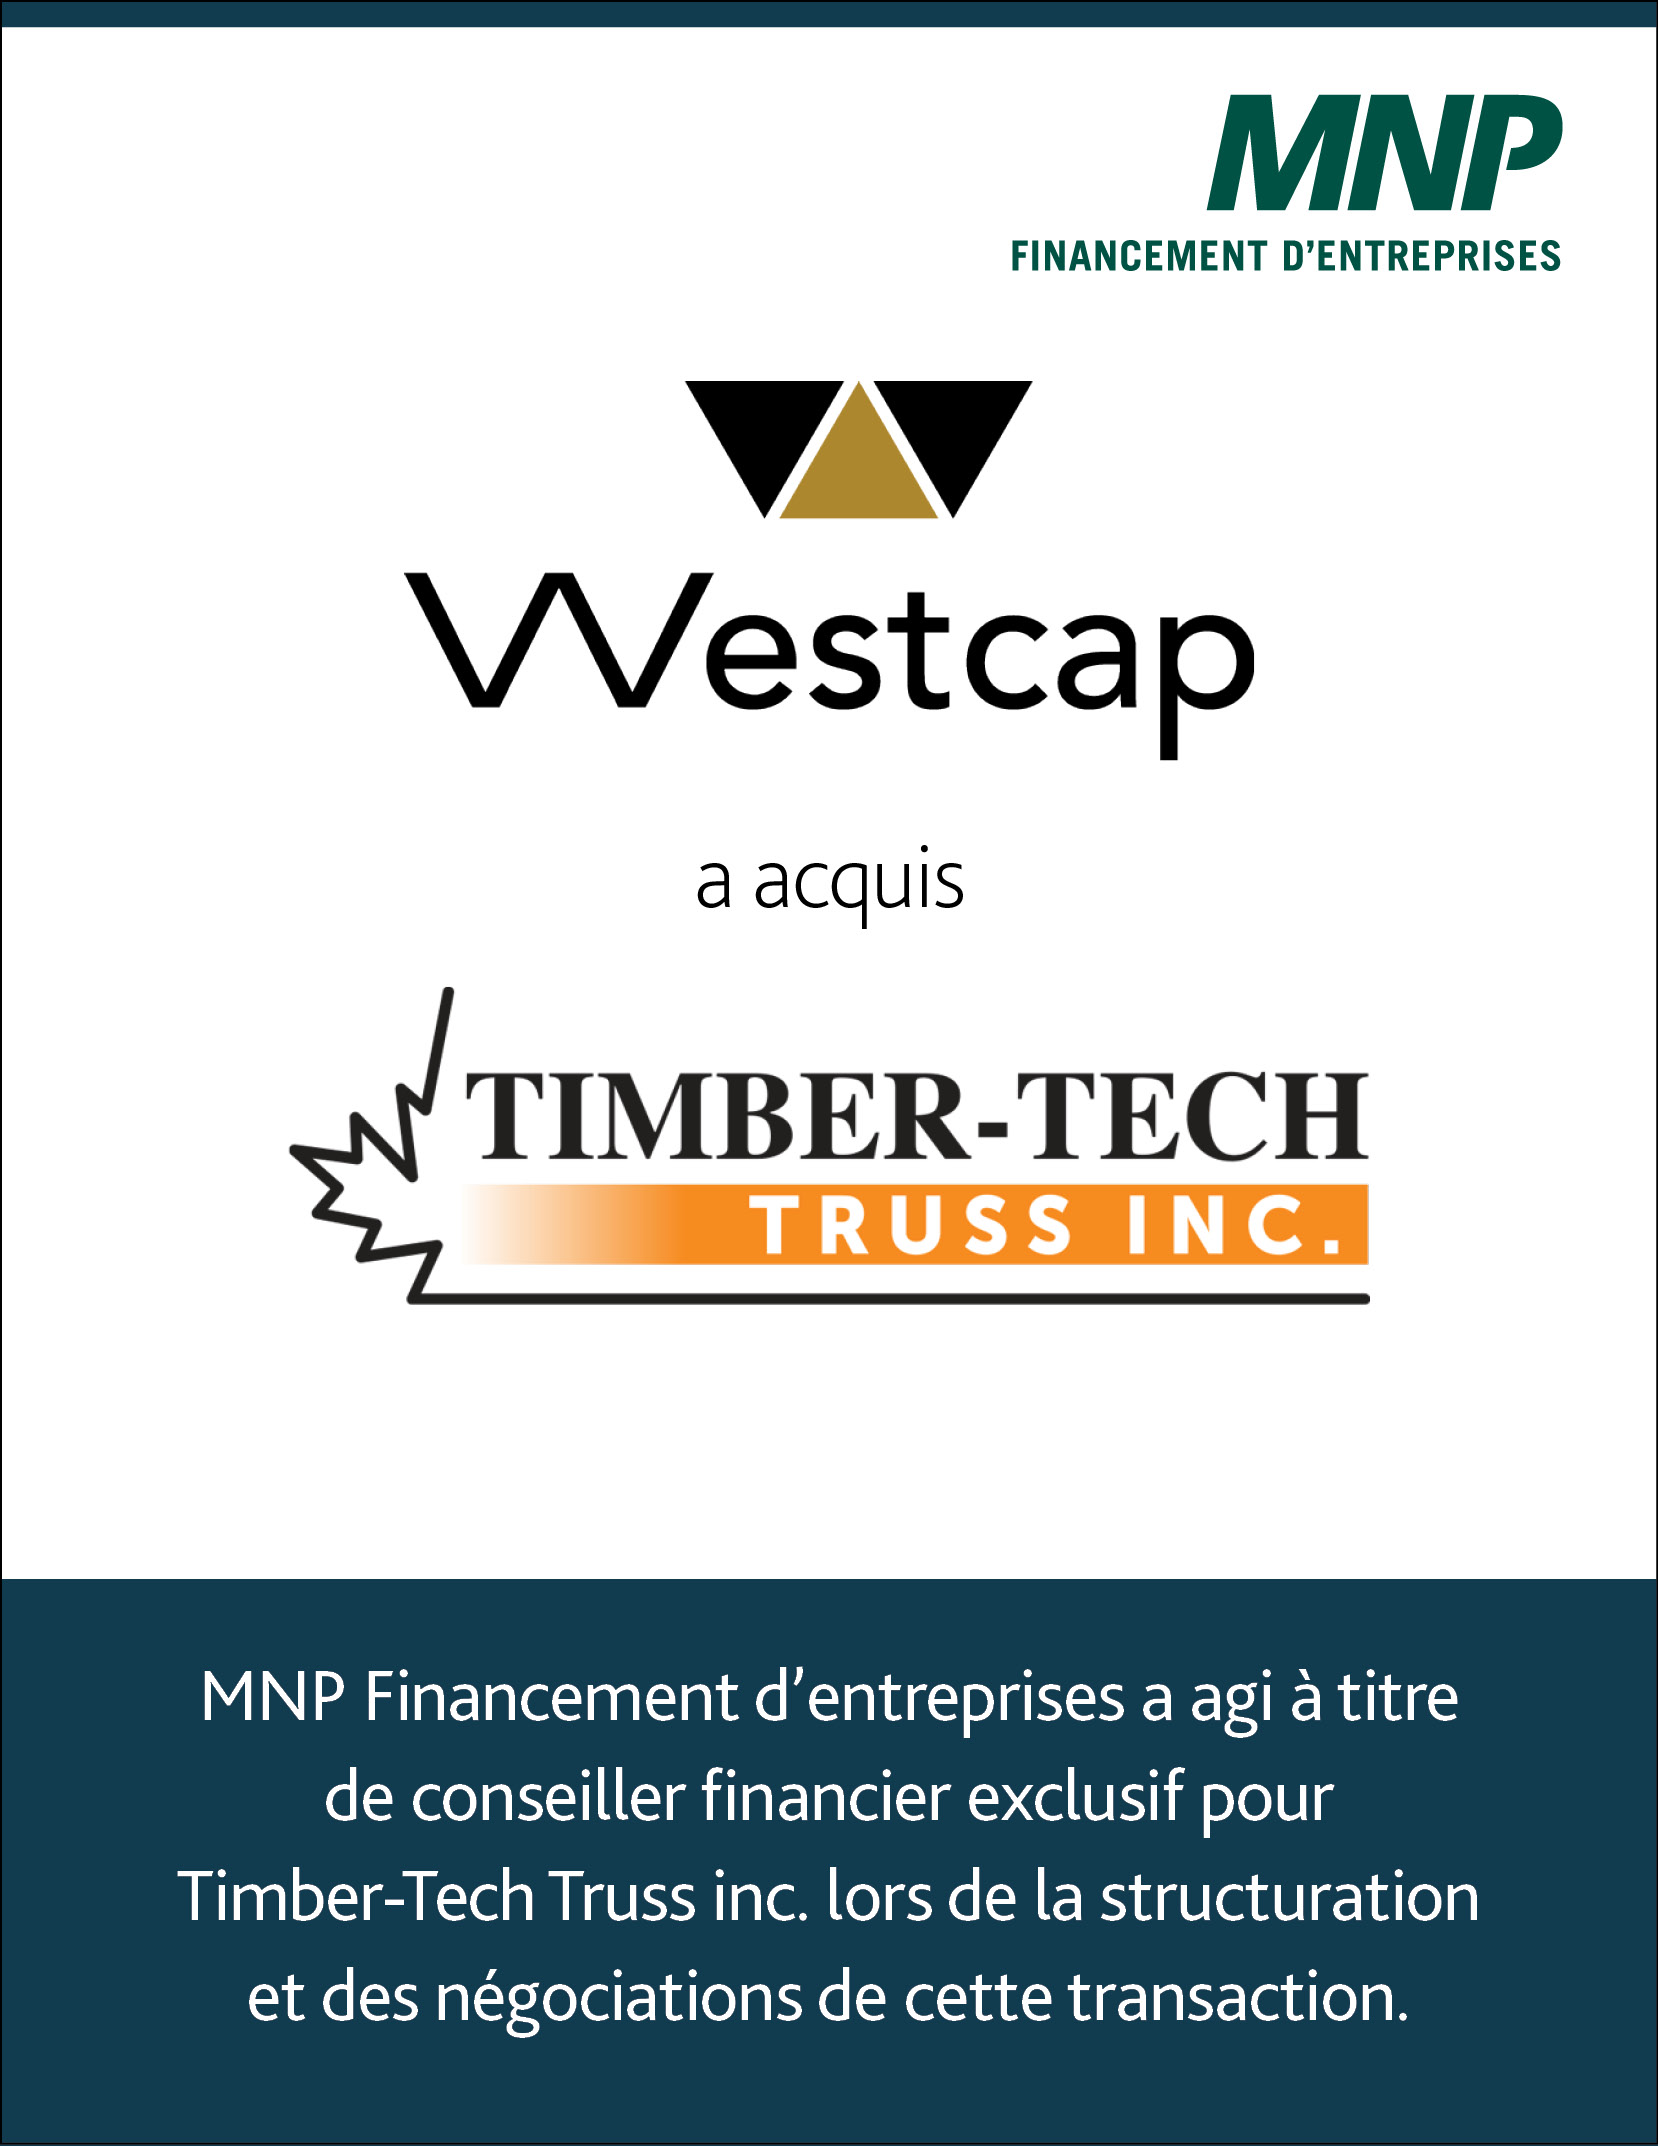 Westcap acquiert Timbertech Trust Inc." - Un logo de Westcap, une société financière, avec le texte "Timbertech Trust Inc." en dessous.